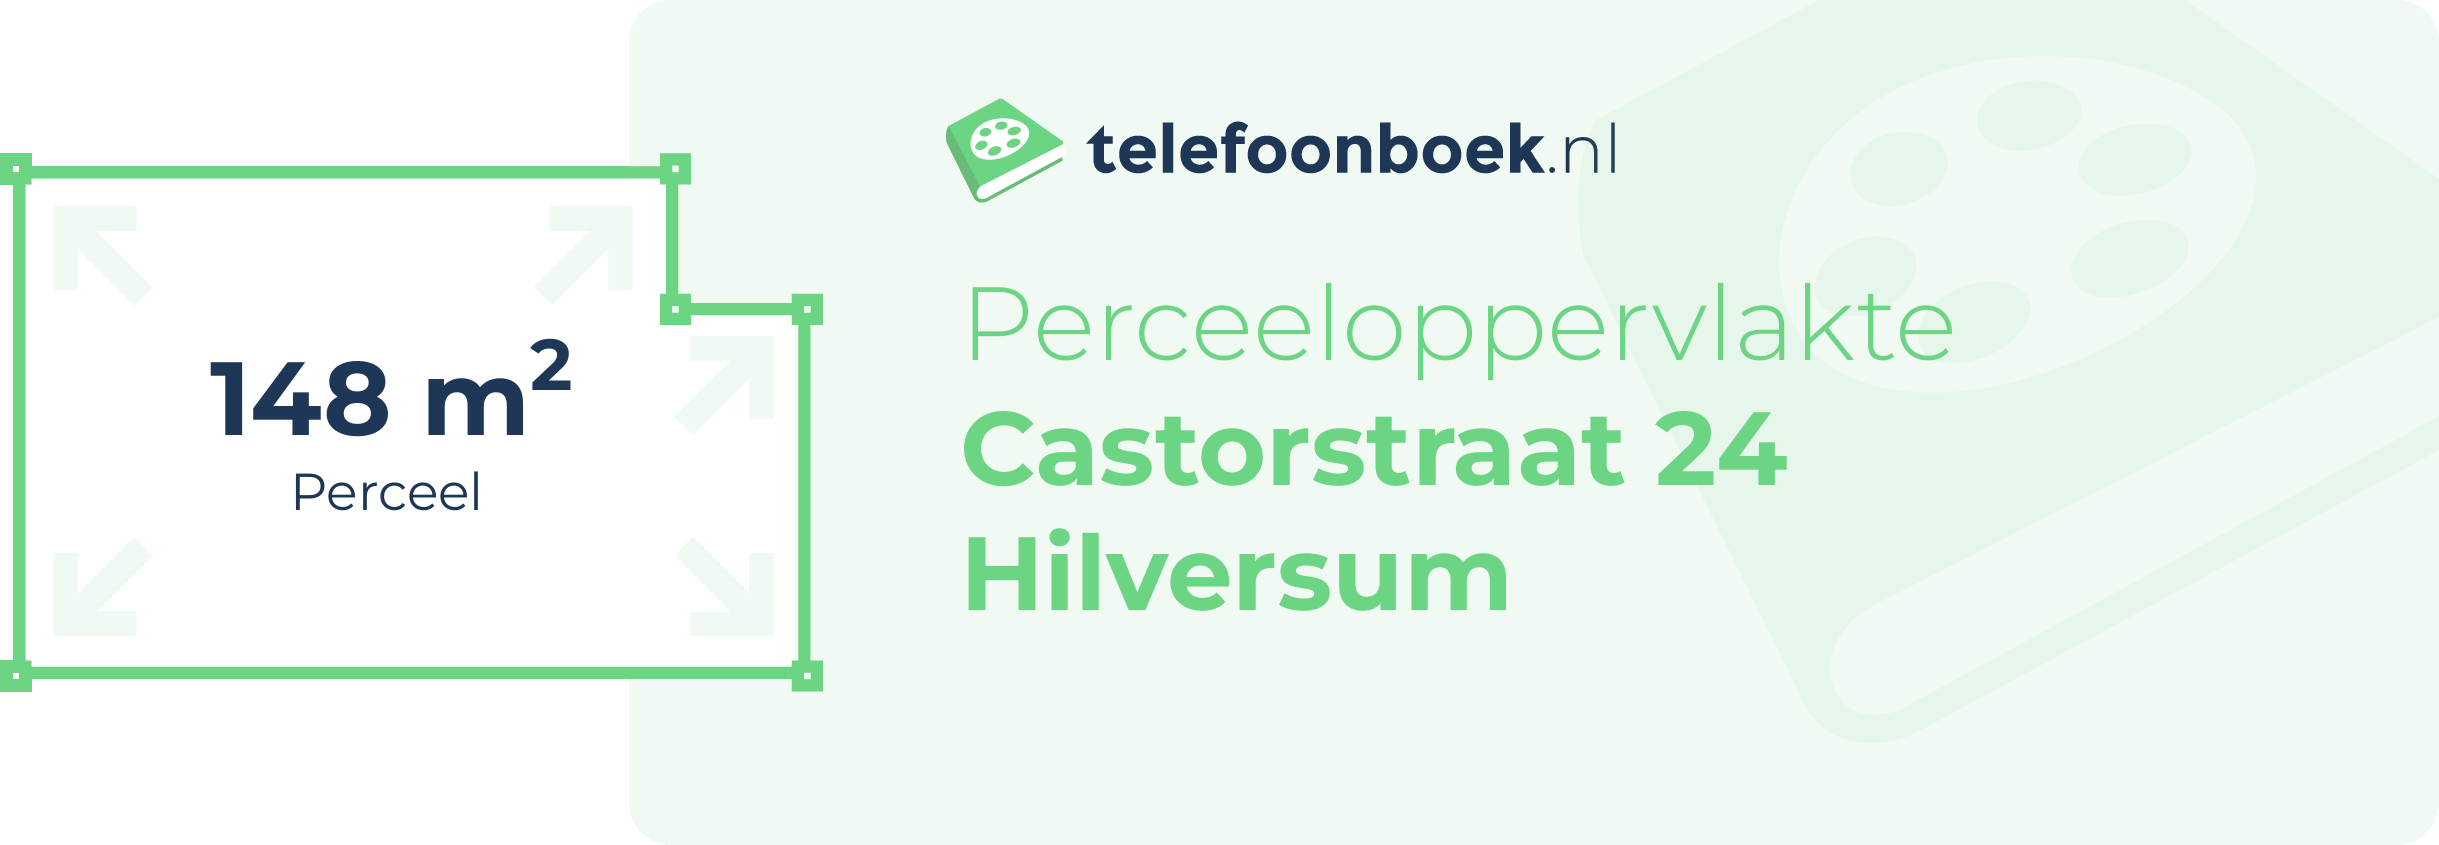 Perceeloppervlakte Castorstraat 24 Hilversum